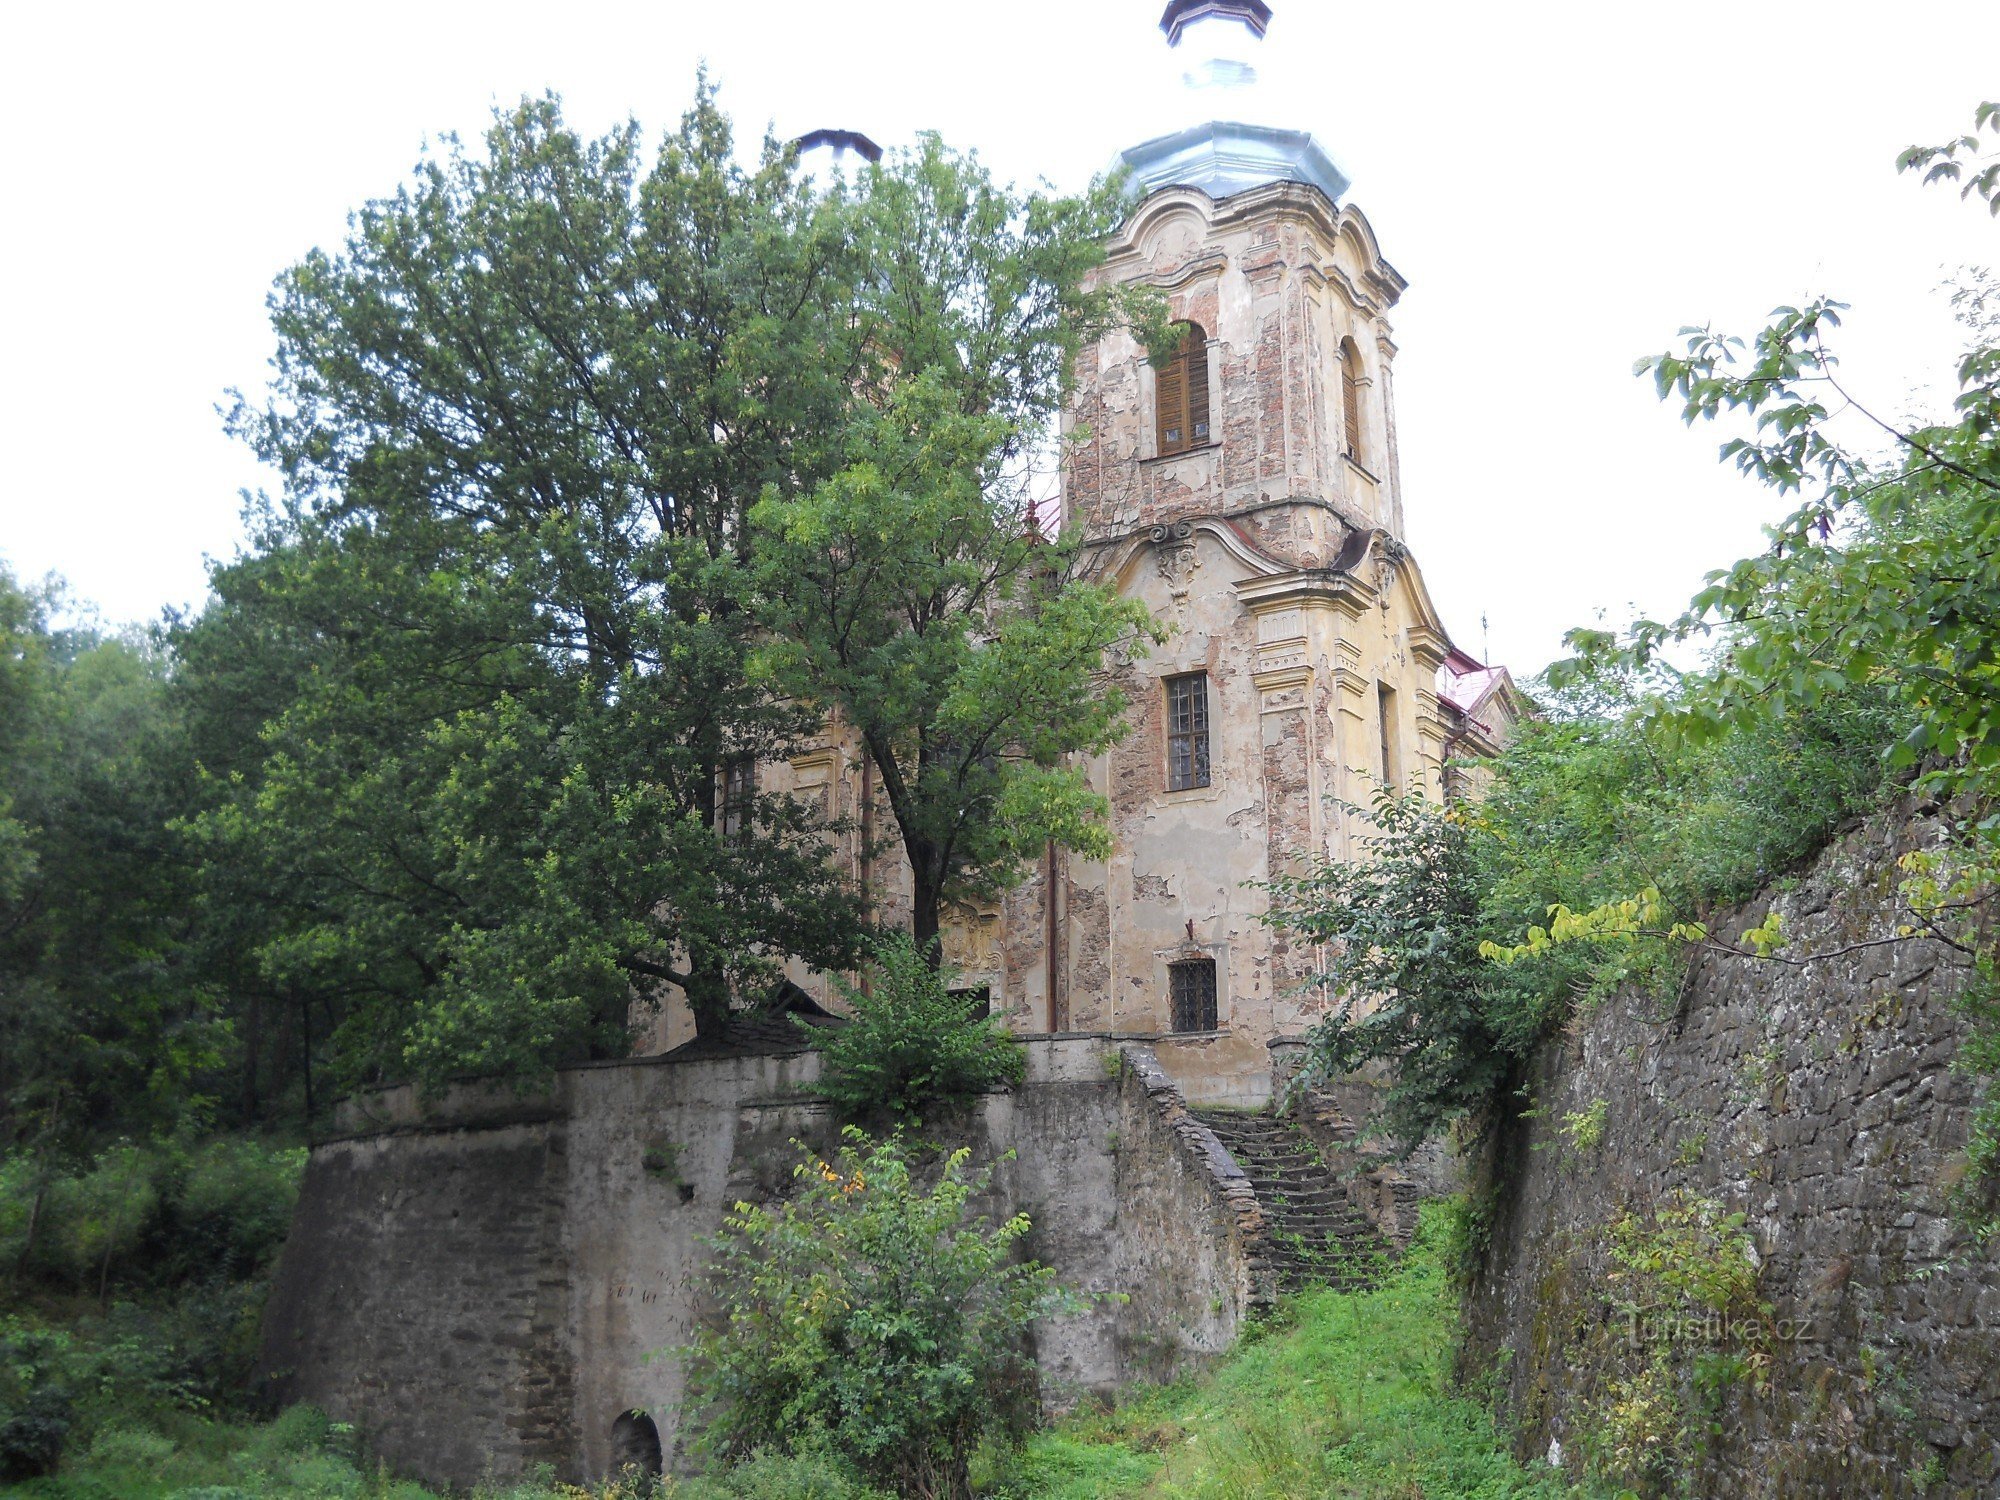 Skoky - Nhà thờ Lễ viếng của Đức Trinh nữ Maria